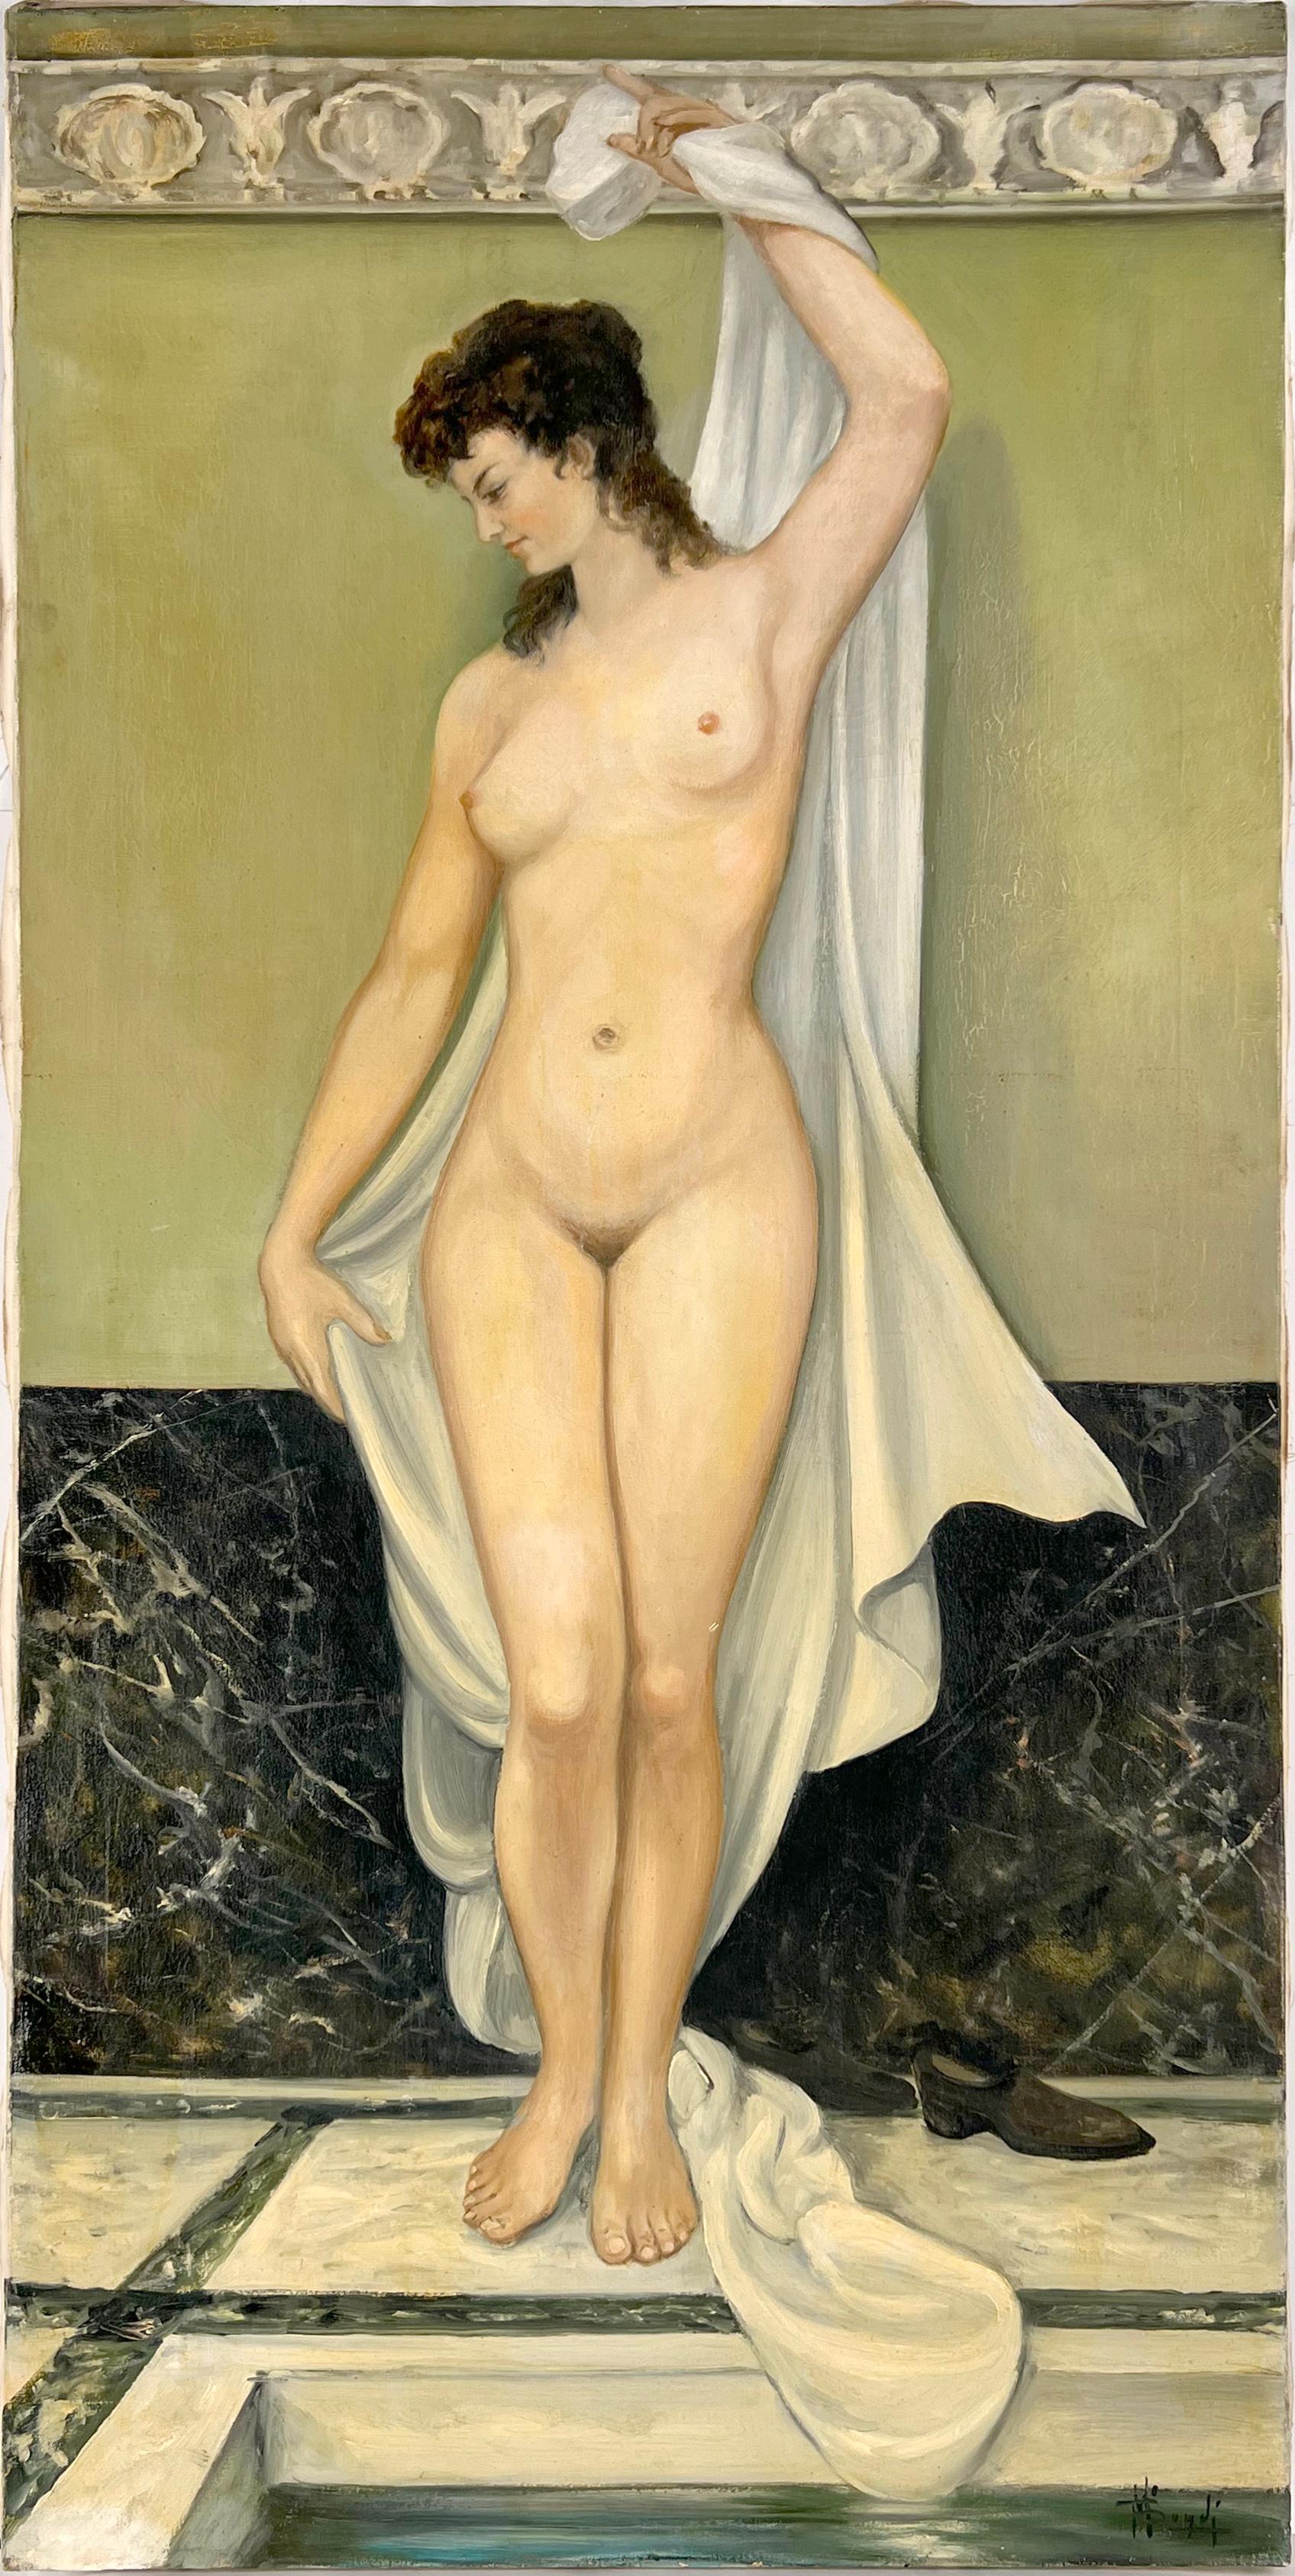 M Bondi Nude Painting - Nude in the Roman Baths oil on linen 1967